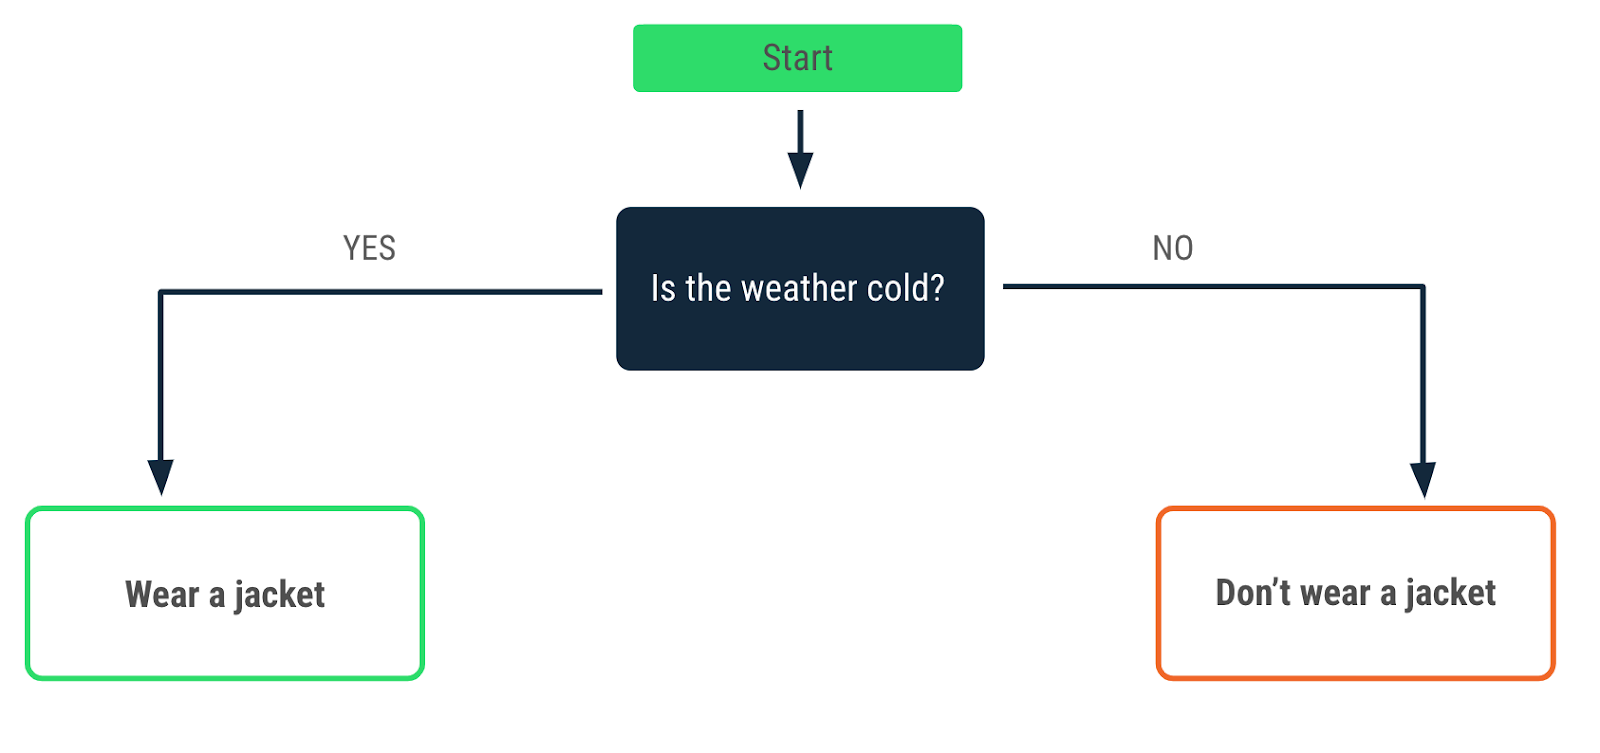 這張流程圖說明天氣寒冷時的決策模式。標有「是」的箭頭指向「穿外套」訊息，標有「否」的箭頭指向「不穿外套」訊息。